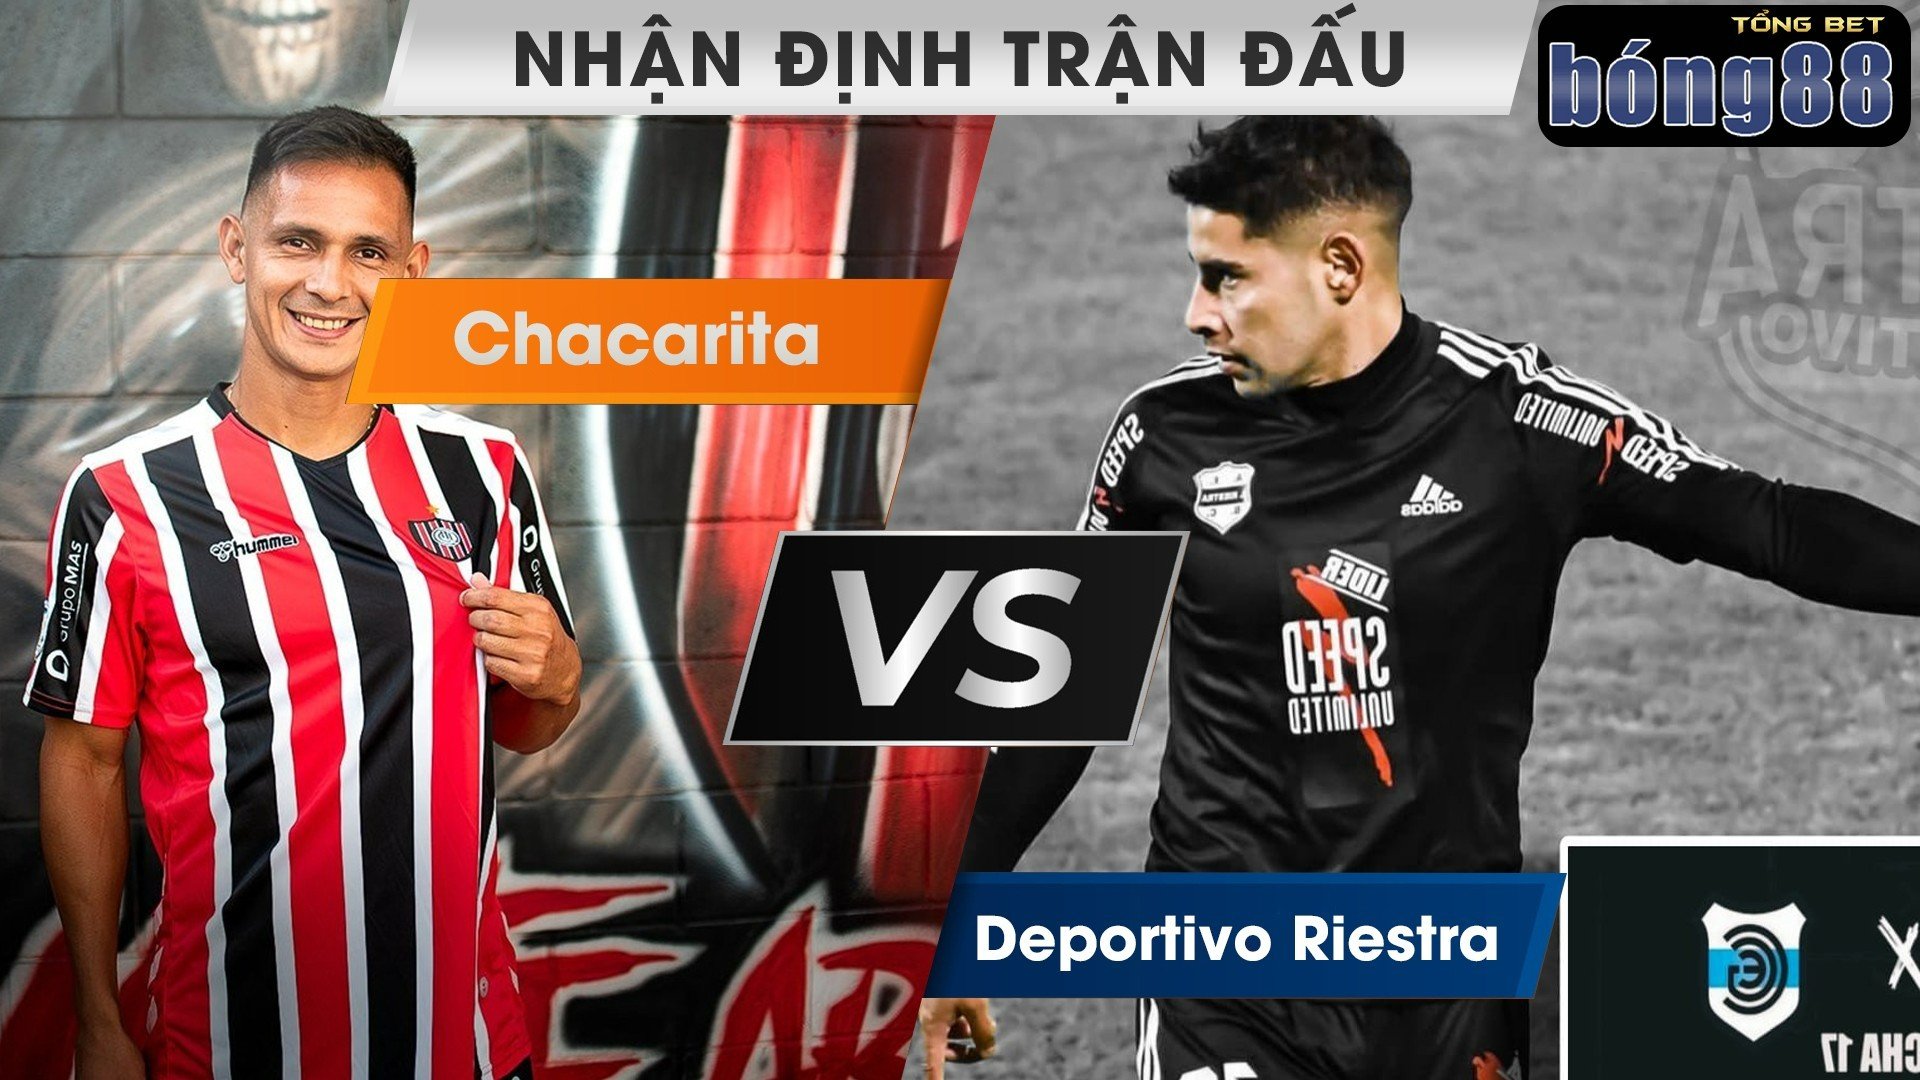 soi kèo trận đấu giữa Deportivo Riestra vs Chacarita 01